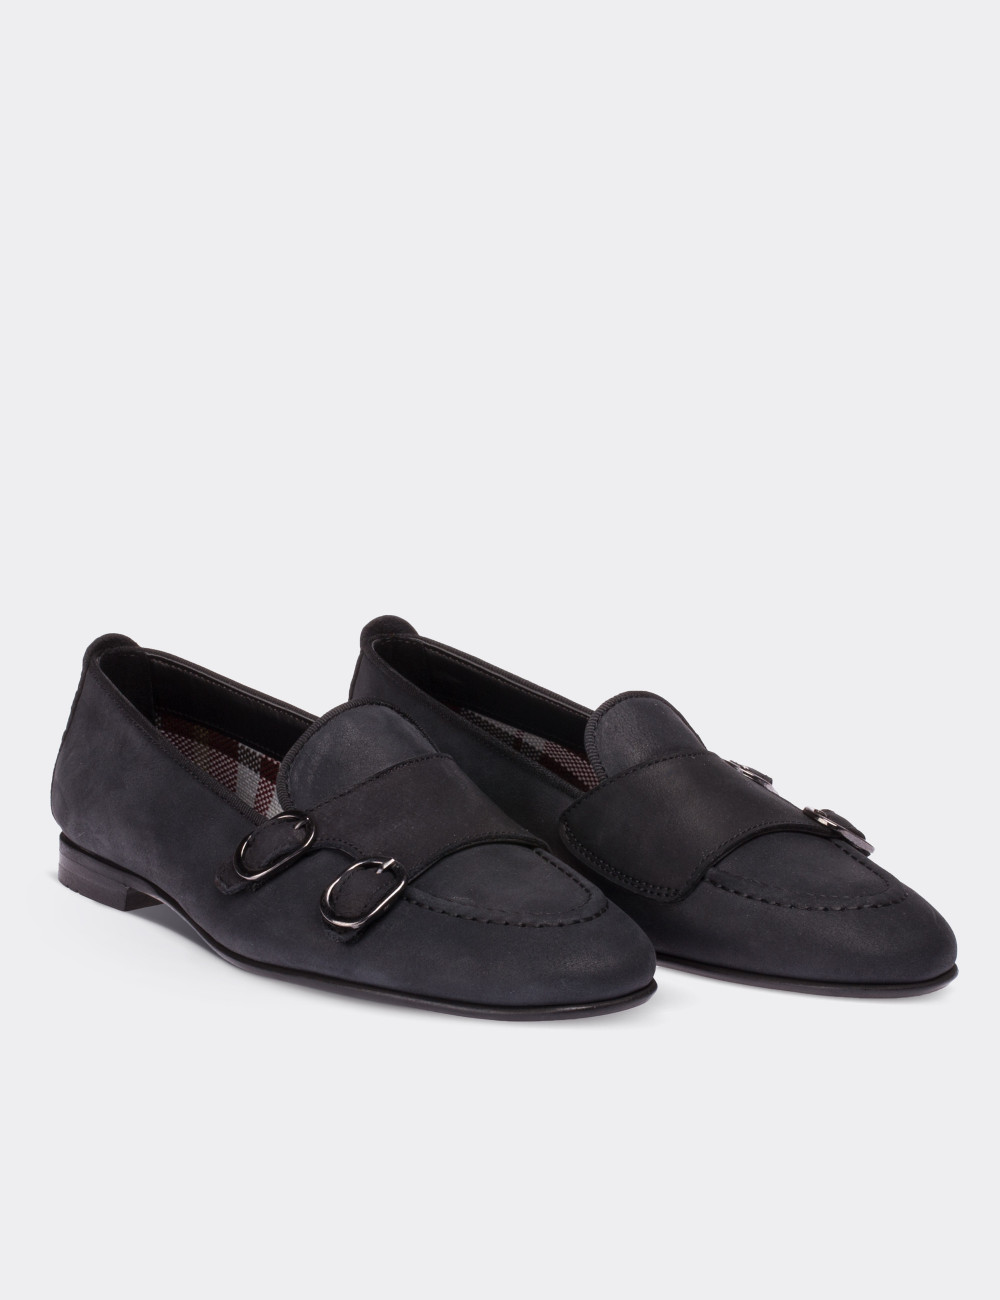 Black Nubuck Leather Loafers - 01617ZSYHM01